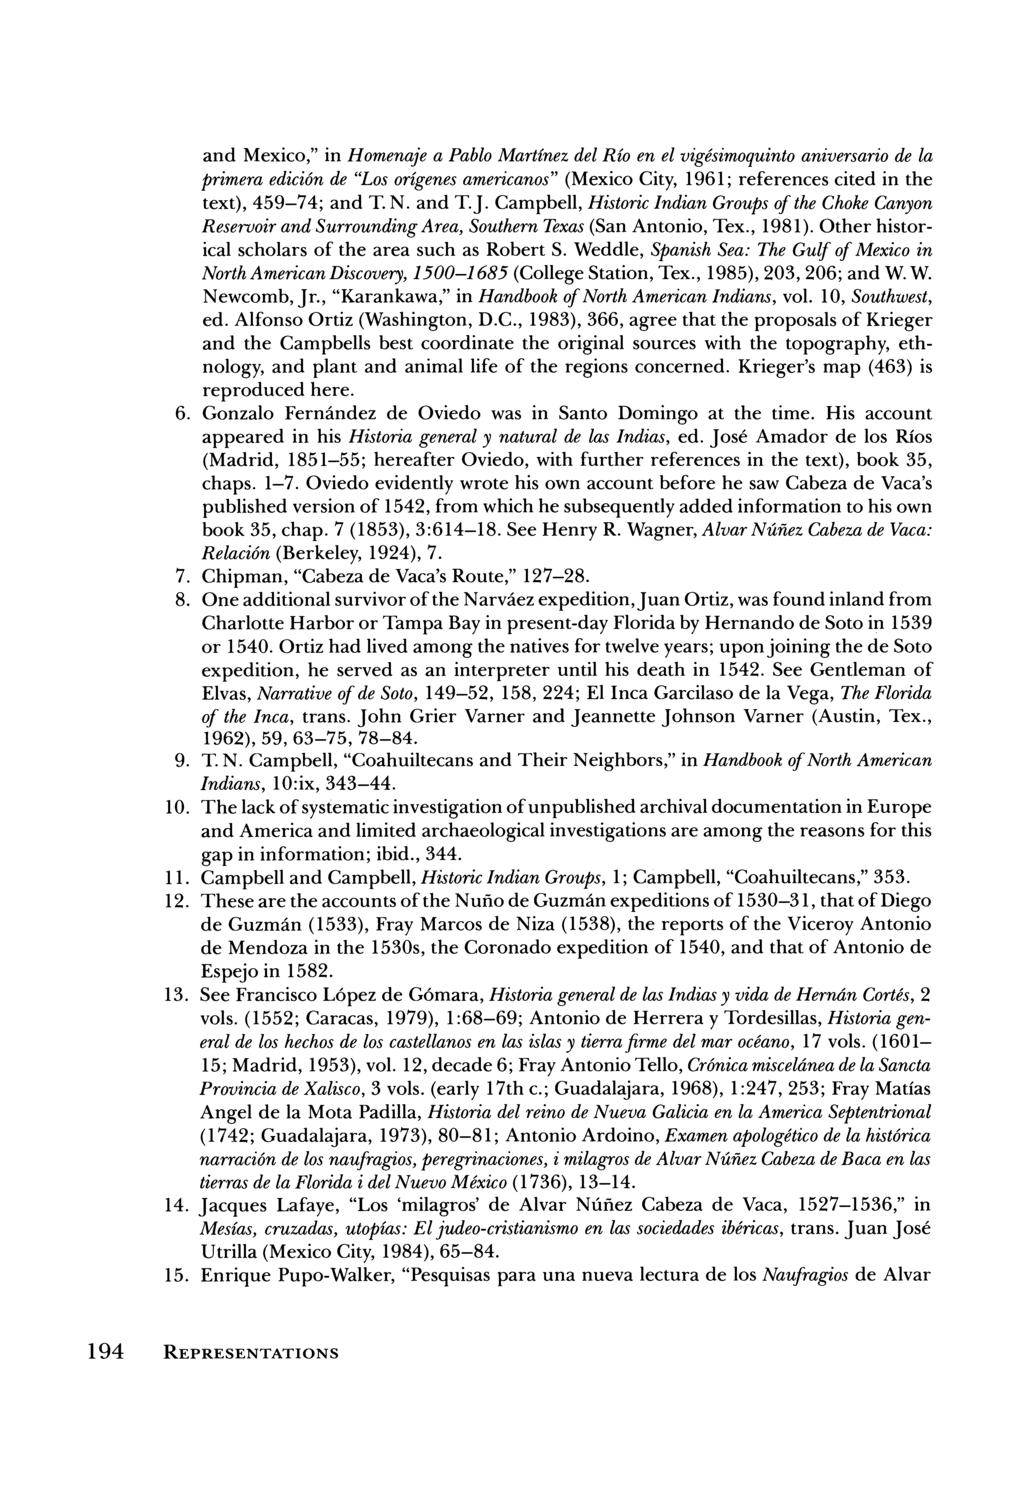 and Mexico," in Homenaje a Pablo Martinez del Rio en el vigesimoquinto aniversario de la primera edici6n de "Los origenes americanos" (Mexico City, 1961; references cited in the text), 459-74; and T.